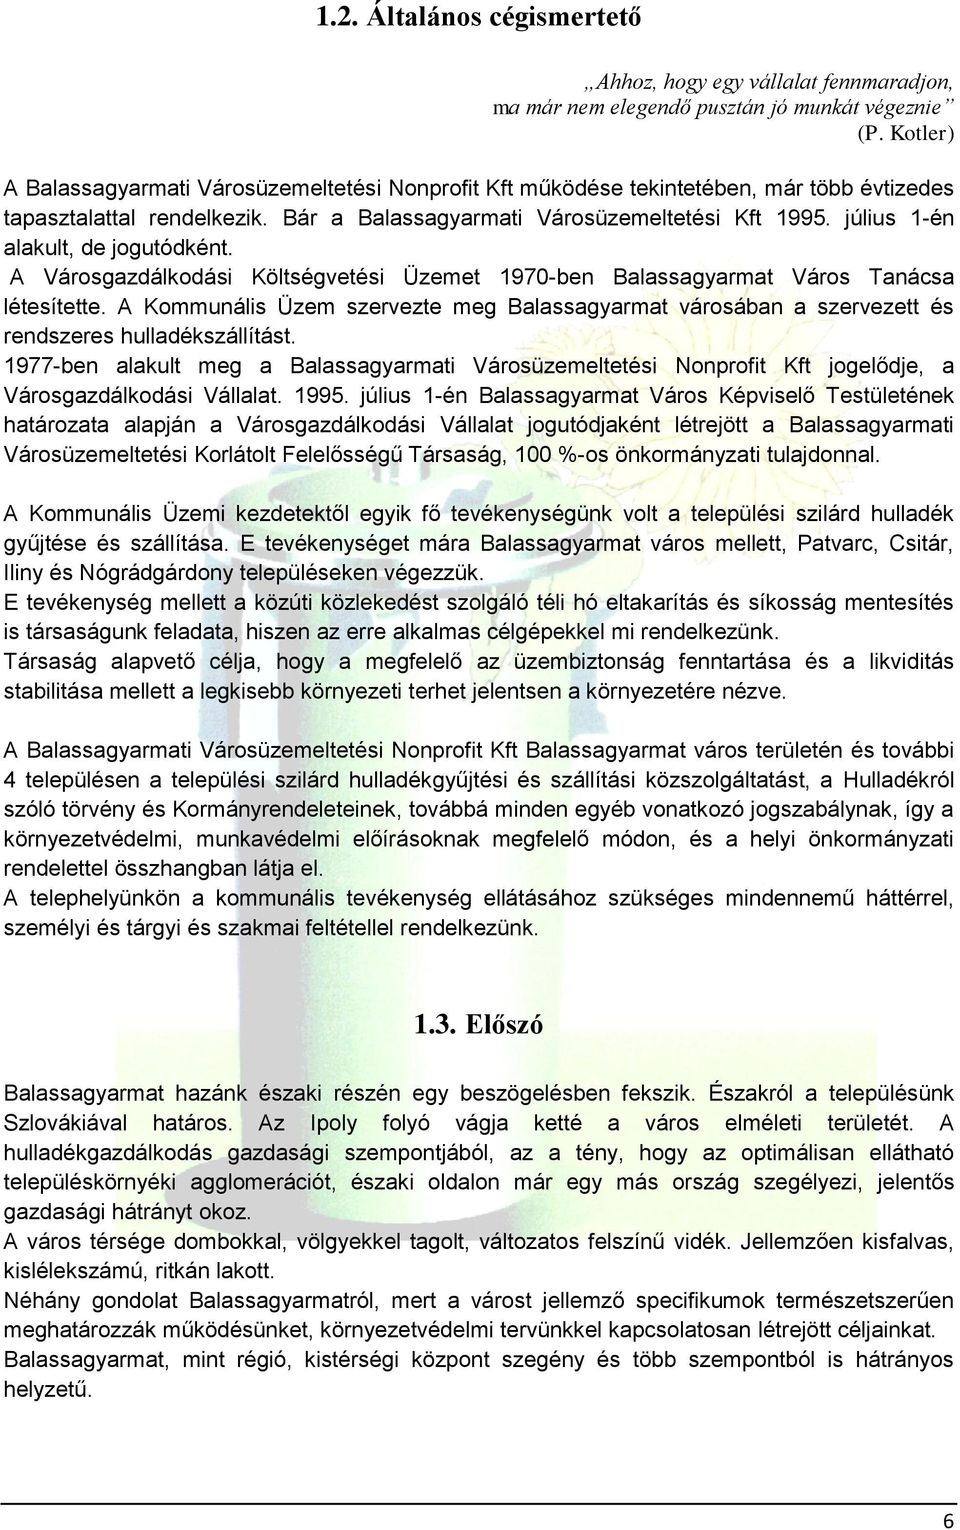 BALASSAGYARMAT MÁRCIUS - PDF Ingyenes letöltés